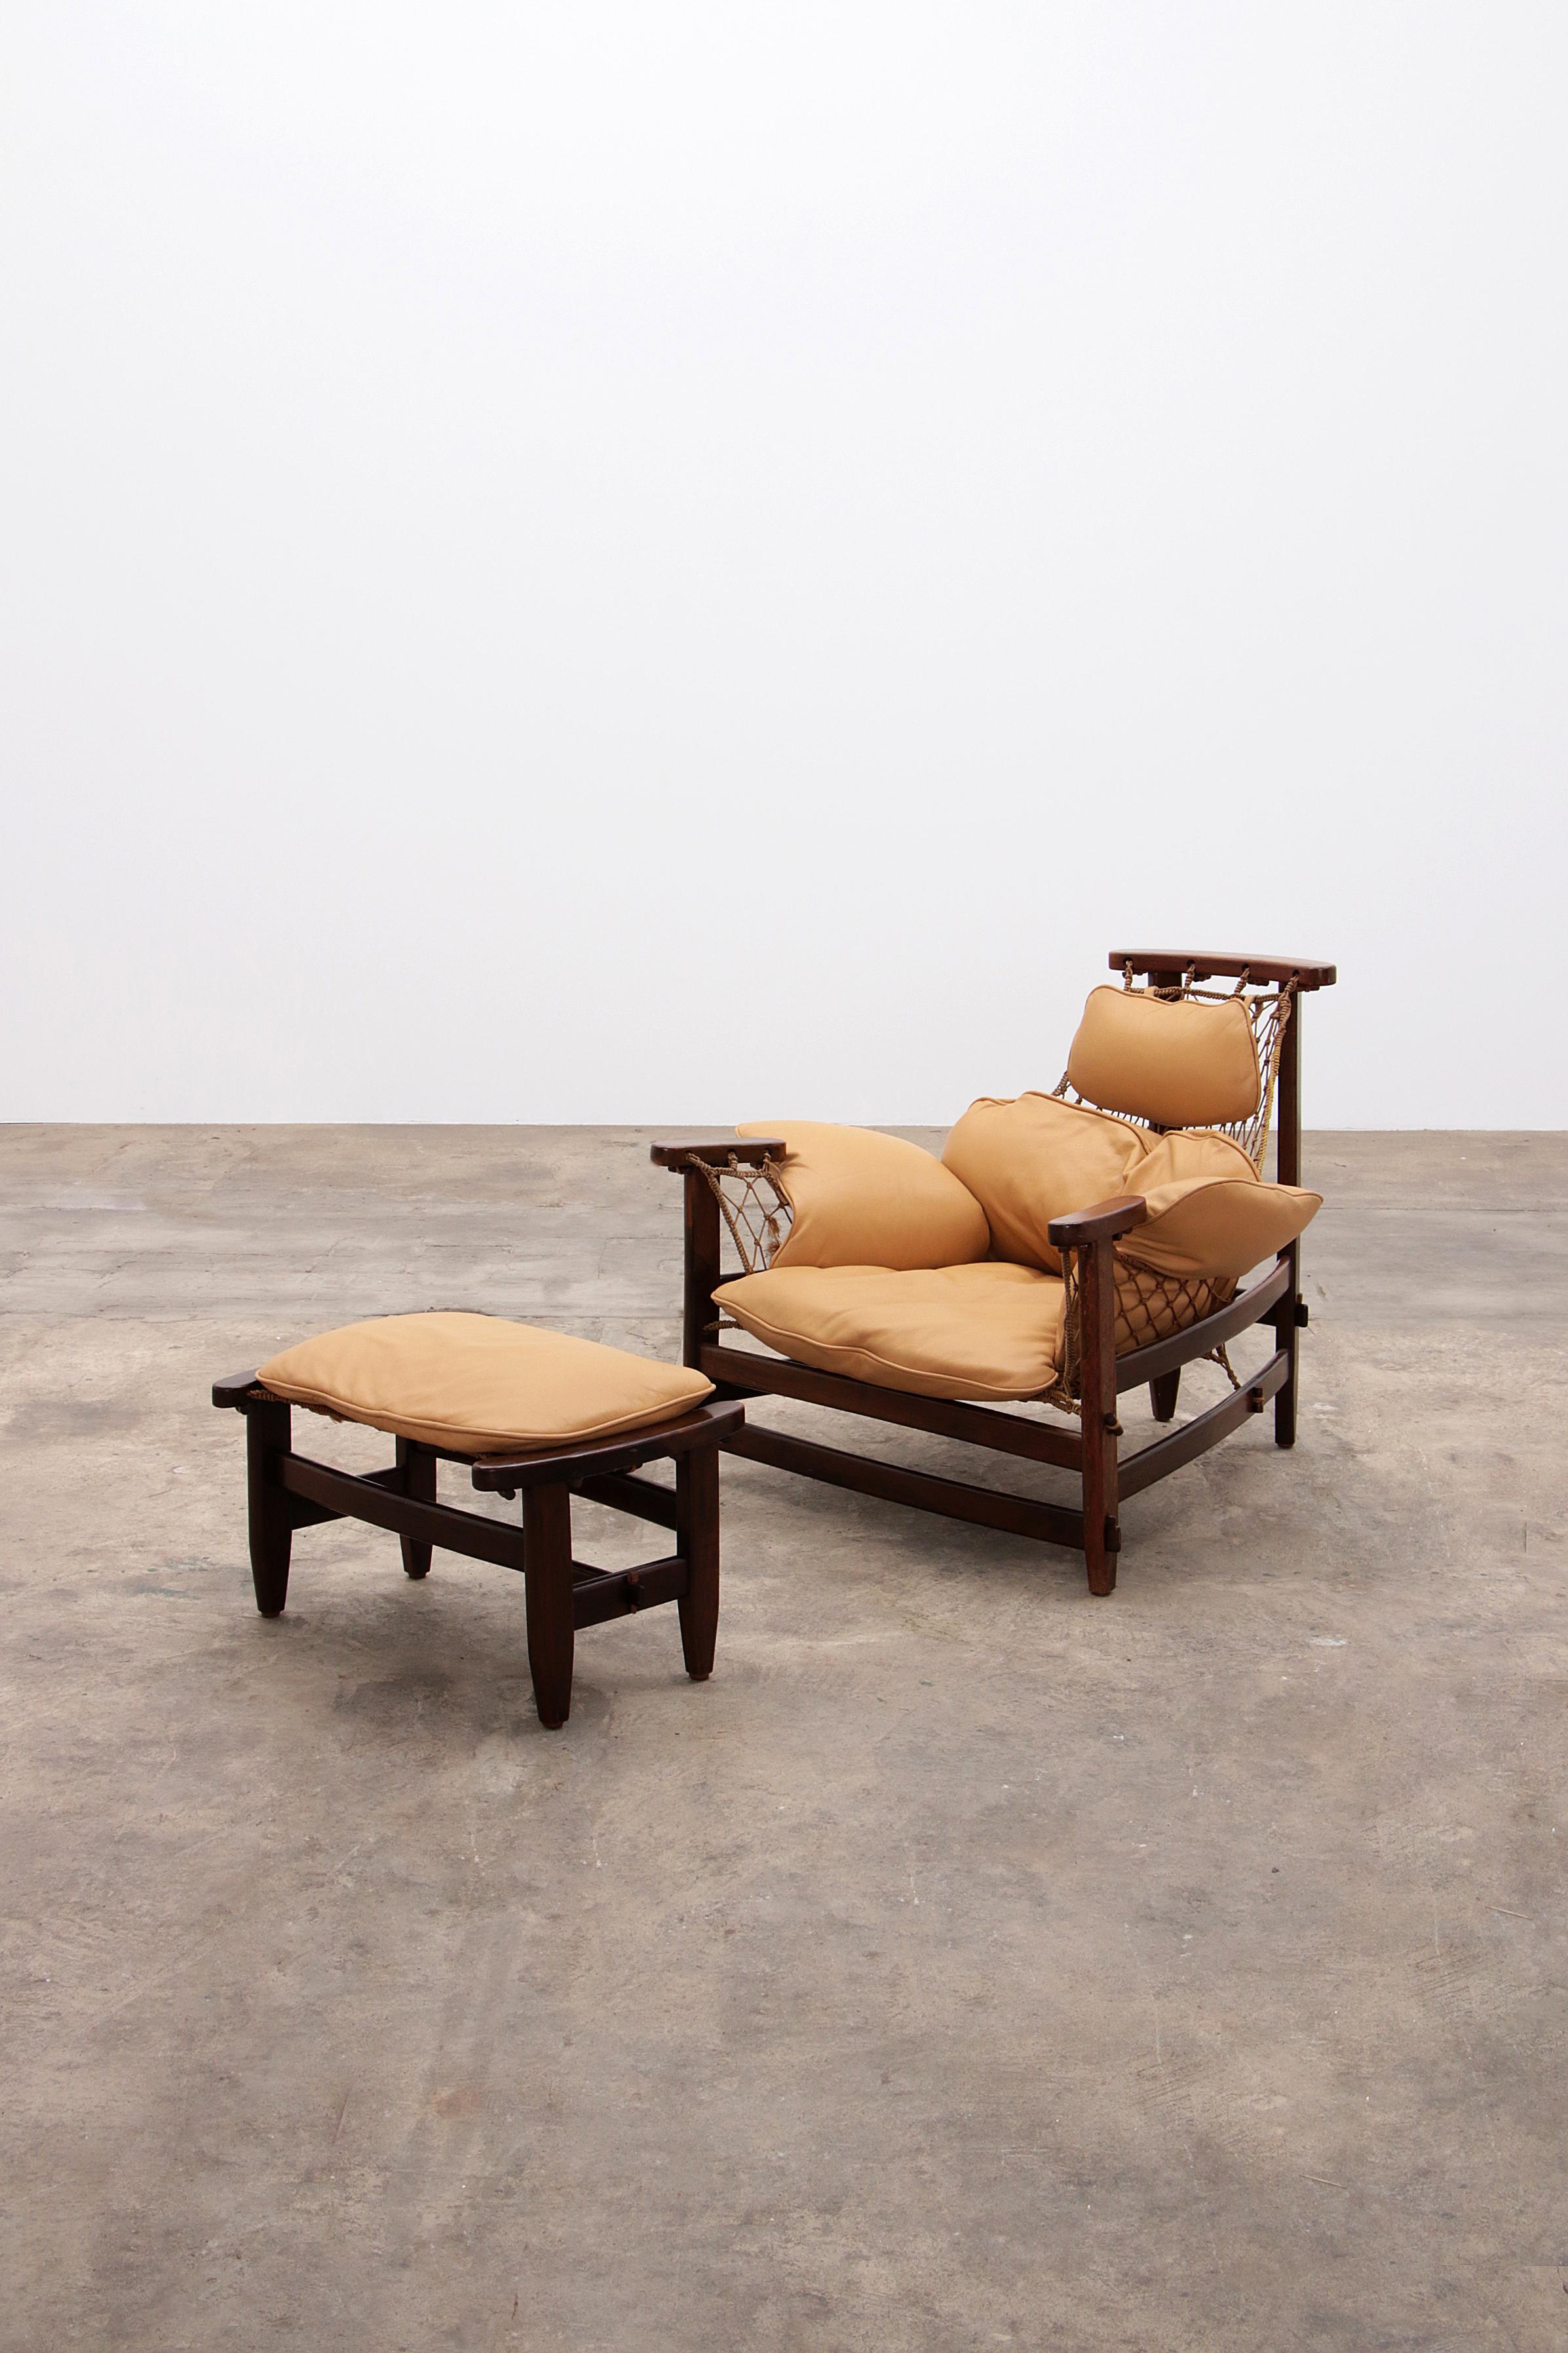 Jean Gillon 'Jangada' Sessel und Ottomane aus Tropenholz und Leder, Brasilien, ca. 1960er Jahre.

Dieser Stuhl und Fußhocker wurde von der Ikone Jean Gillon entworfen und nach den kleinen, rustikalen Fischerbooten benannt, die von den Fischern an